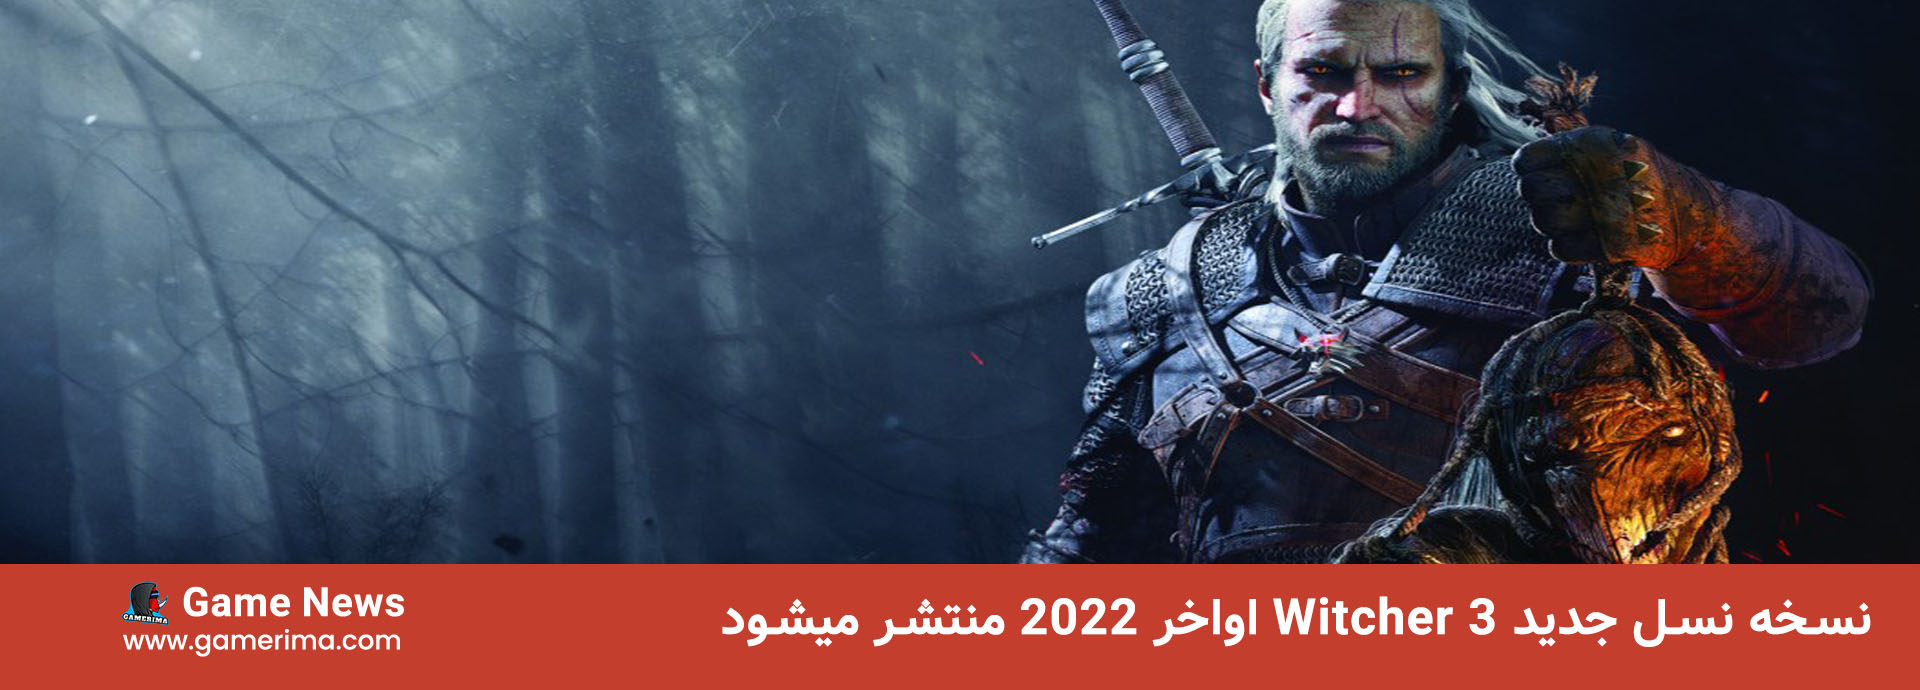 نسخه نسل جدید Witcher 3 اواخر ۲۰۲۲ منتشر میشود